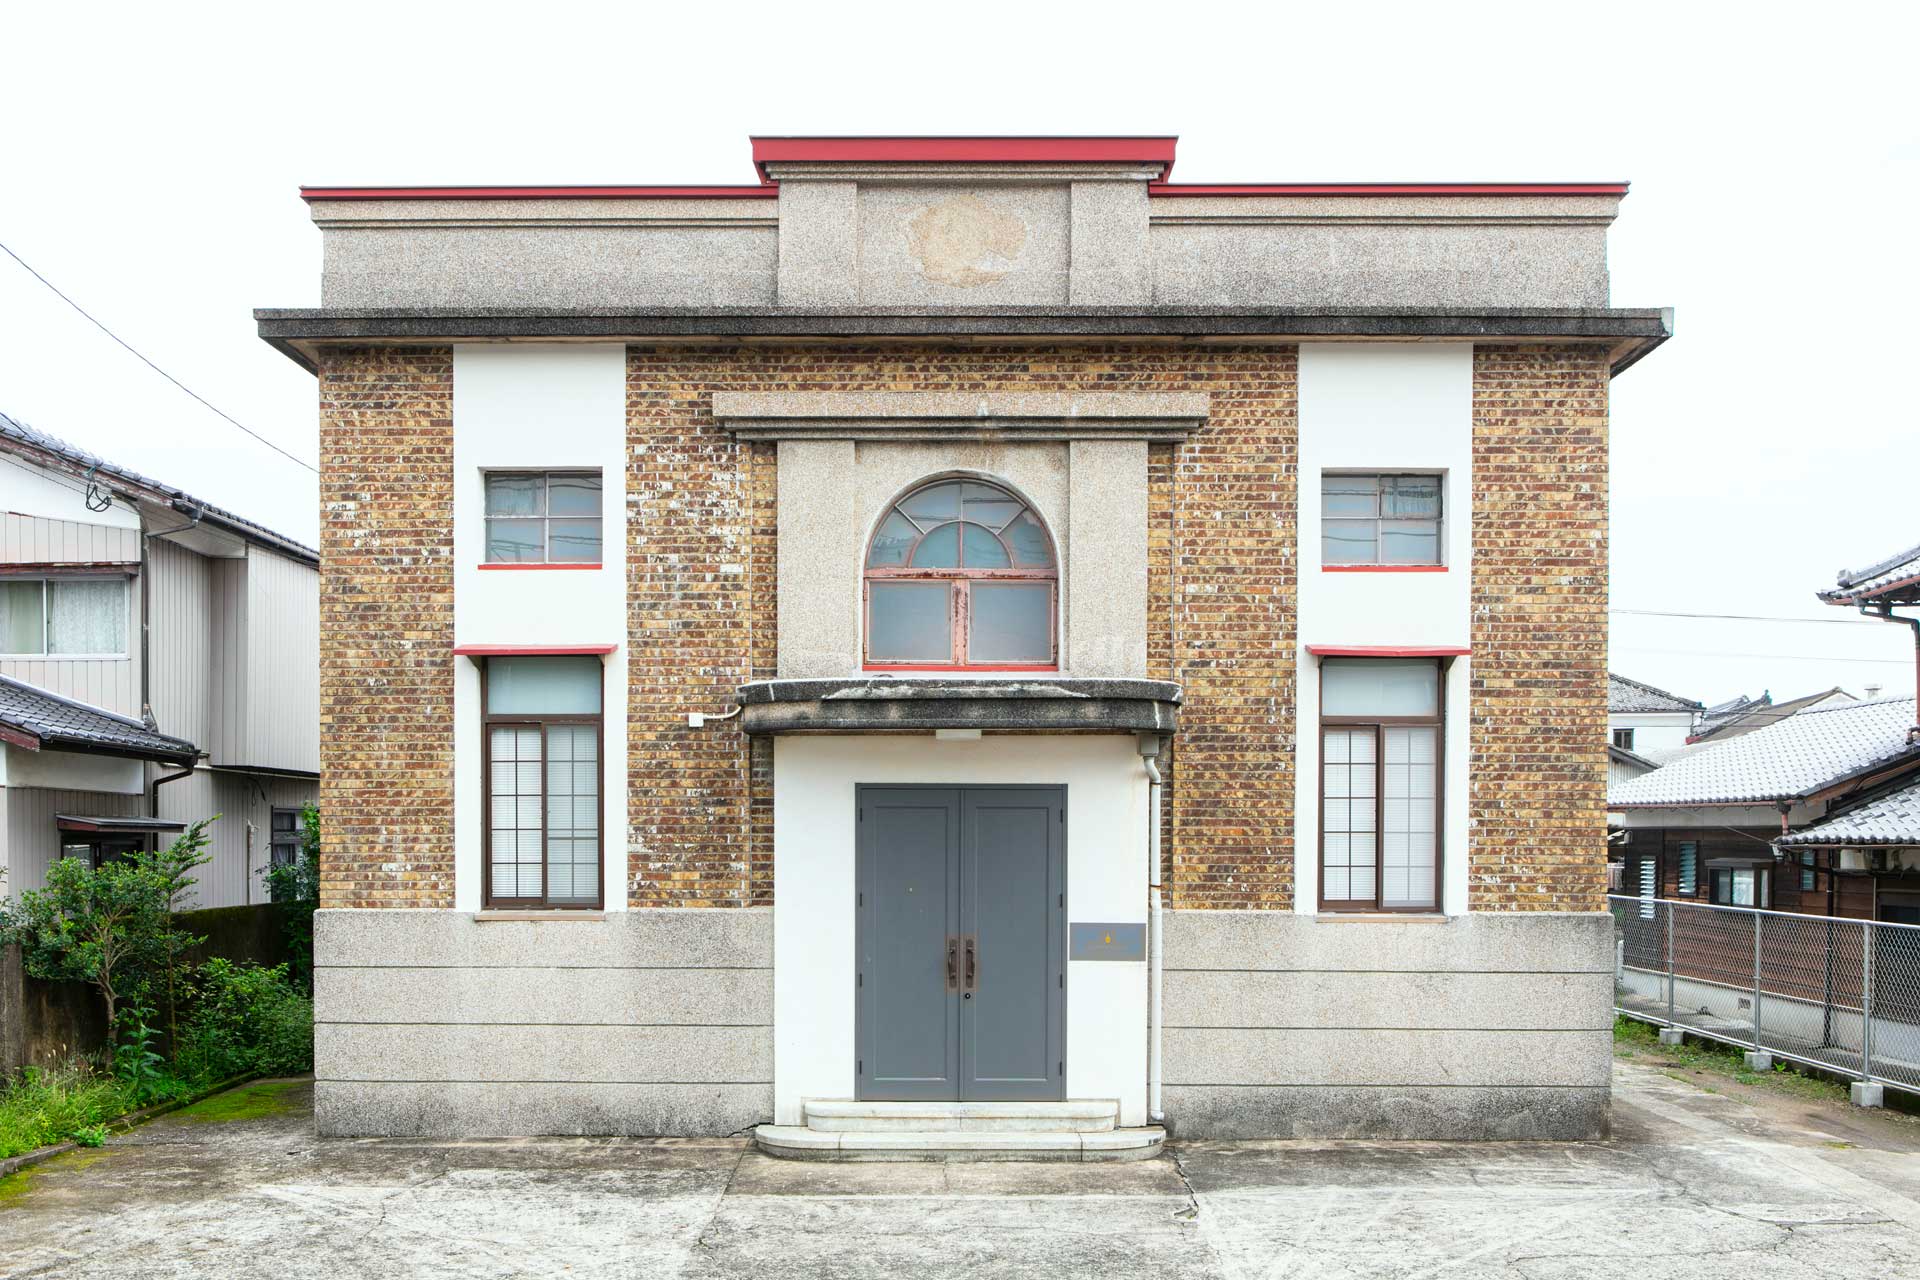 「金富良舎」は昭和8年に完成した旧銀行の跡地を利用した地域のコミュニティスペースです。